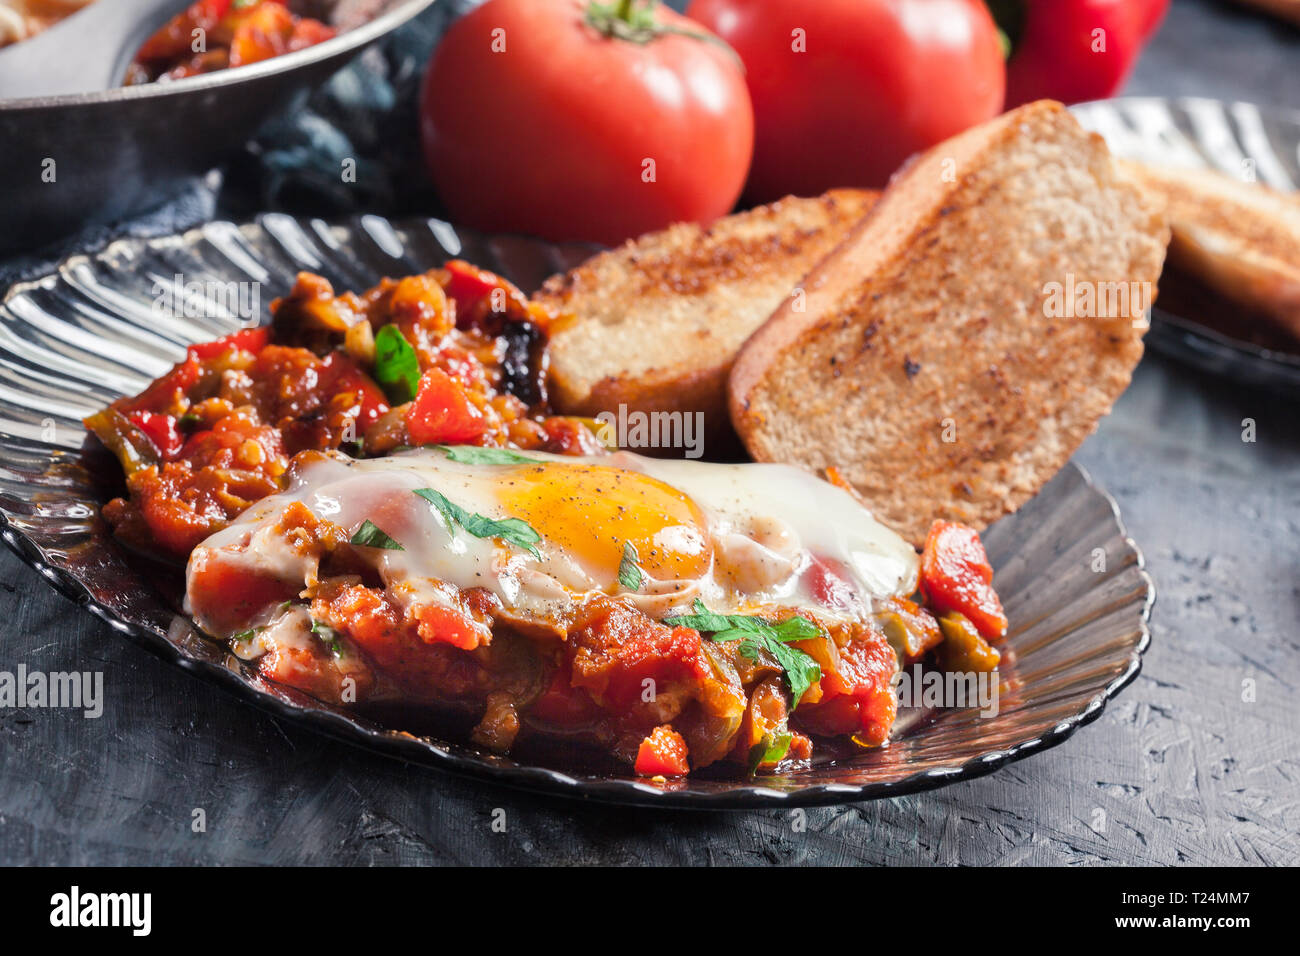 Partie de shakshuka sur une assiette. Plat traditionnel du Moyen-Orient avec les œufs, tomates, poivrons, légumes et fines herbes. Banque D'Images